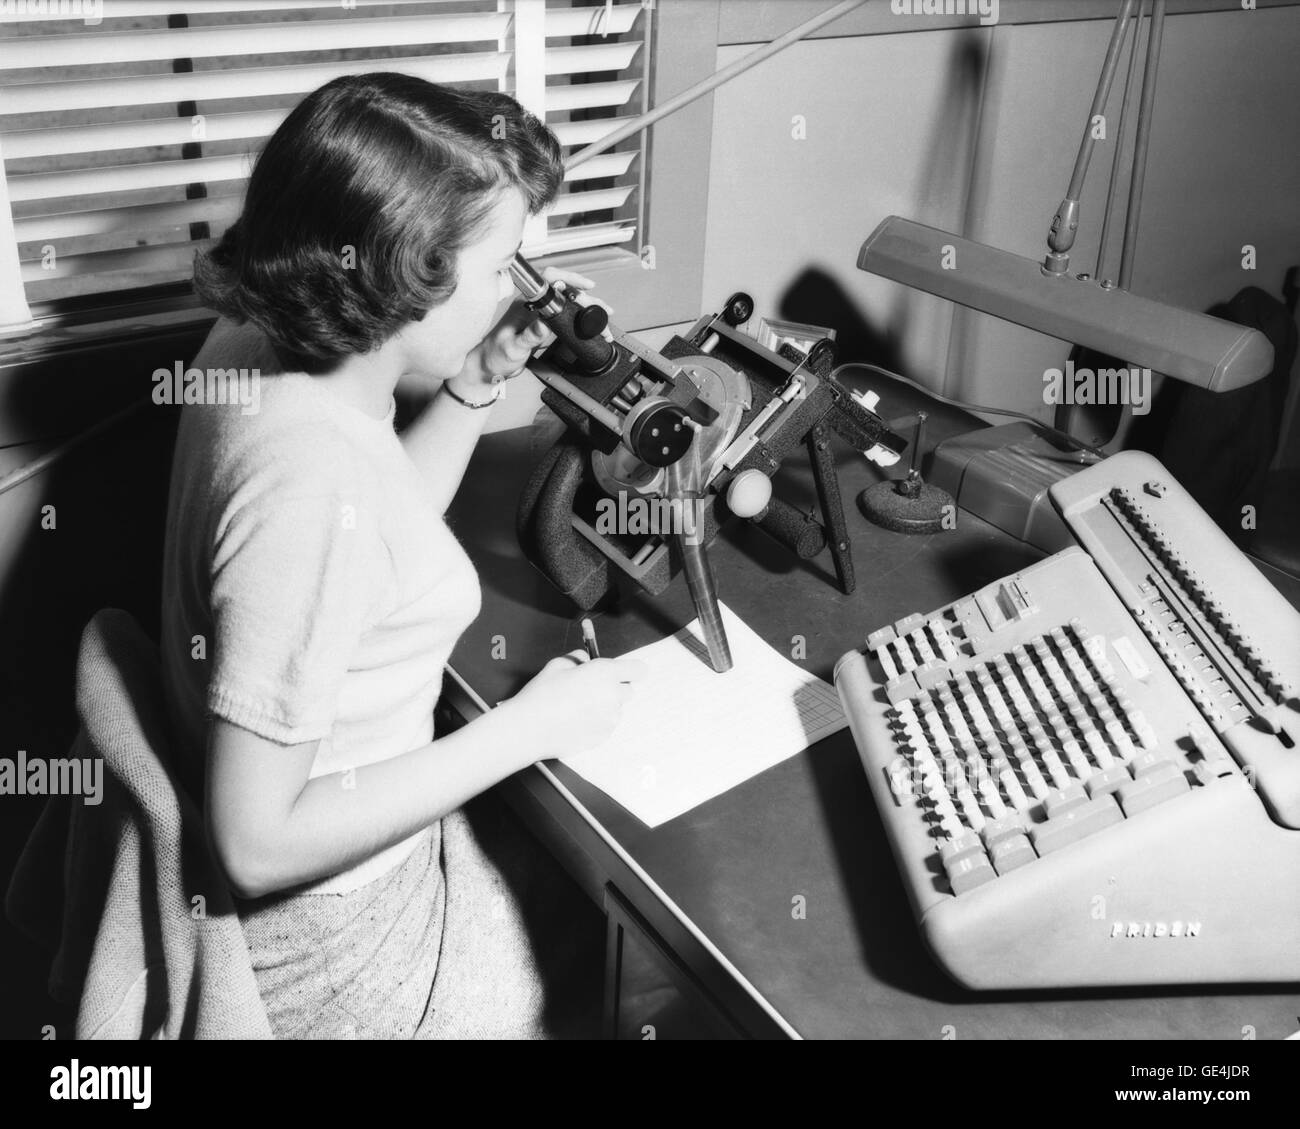 Un computer umano al lavoro con un microscopio la raccolta dei dati a Langley Research Center. Si siede accanto a un Friden il calcolo di macchina. Il comitato consultivo nazionale per l'aeronautica (NACA) assunto le donne a servire come "computer" nella metà degli anni trenta, facendo il drudge opera di lettura dei dati dai risultati della prova (da film come mostrato qui), le formule di calcolo e riportando i risultati. Immagine # : L-74768 Data: Marzo 24, 1952 Foto Stock